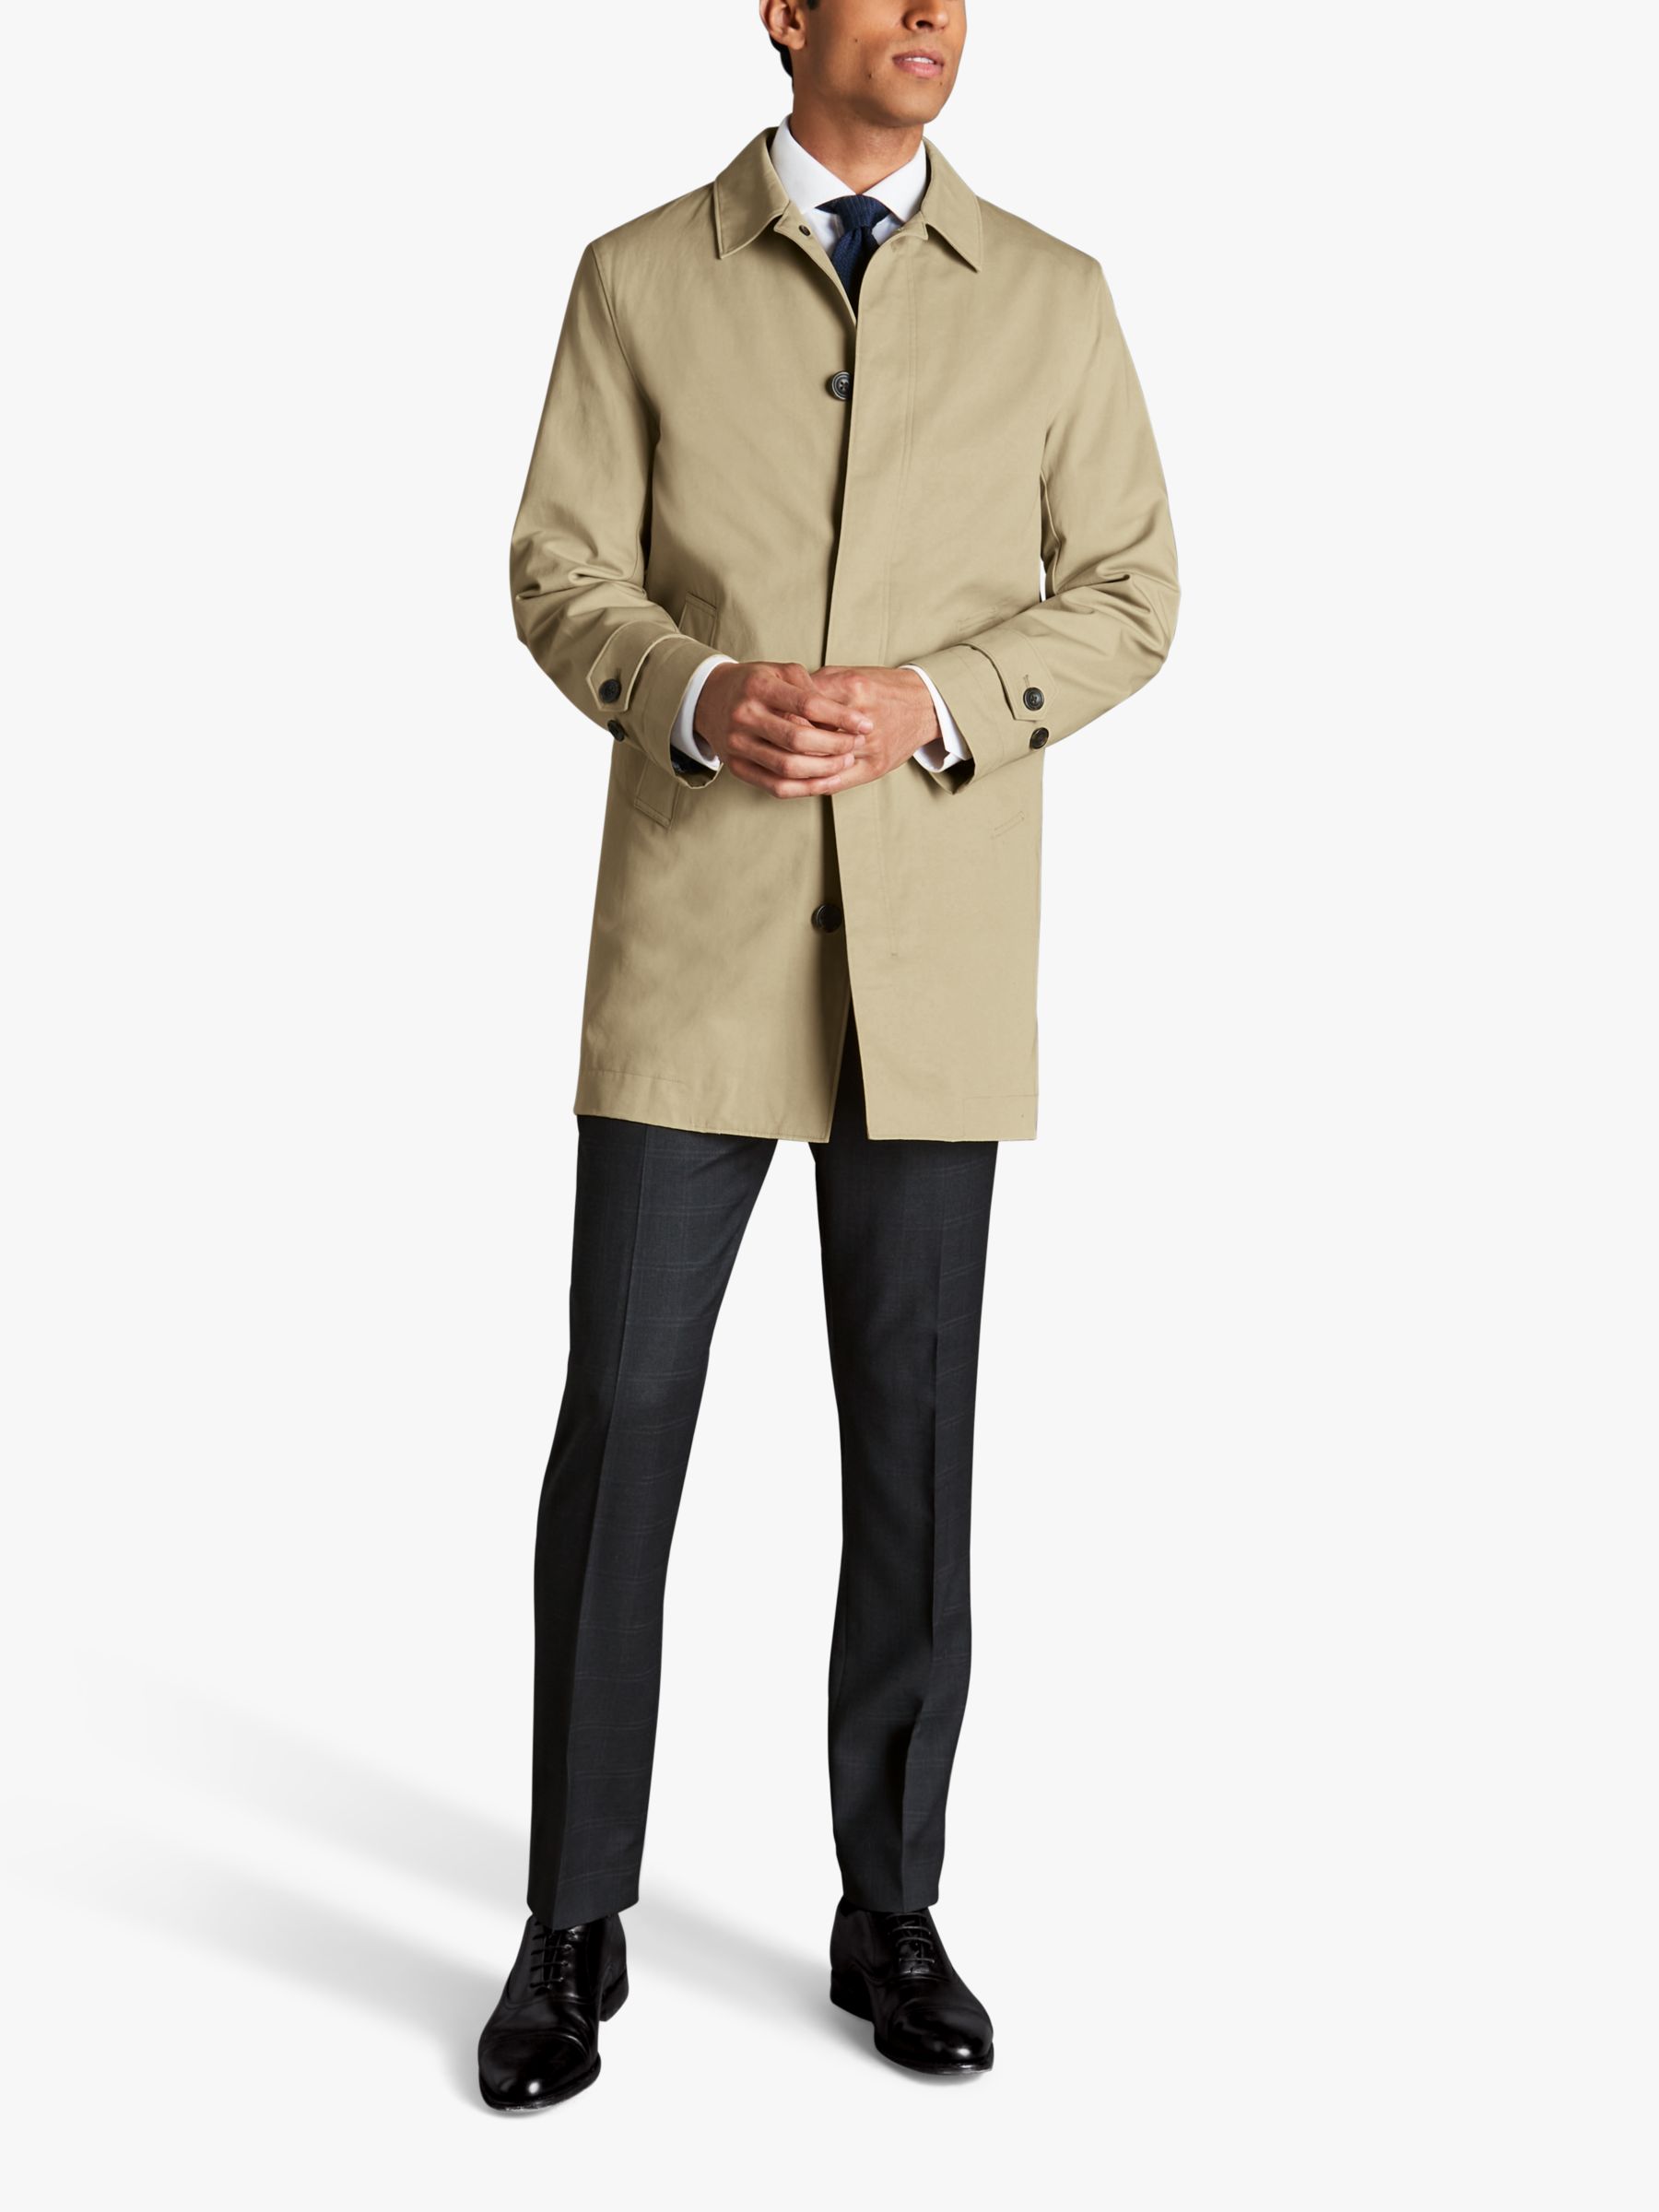 Charles Tyrwhitt Classic Showerproof Raincoat, Limestone, 34R